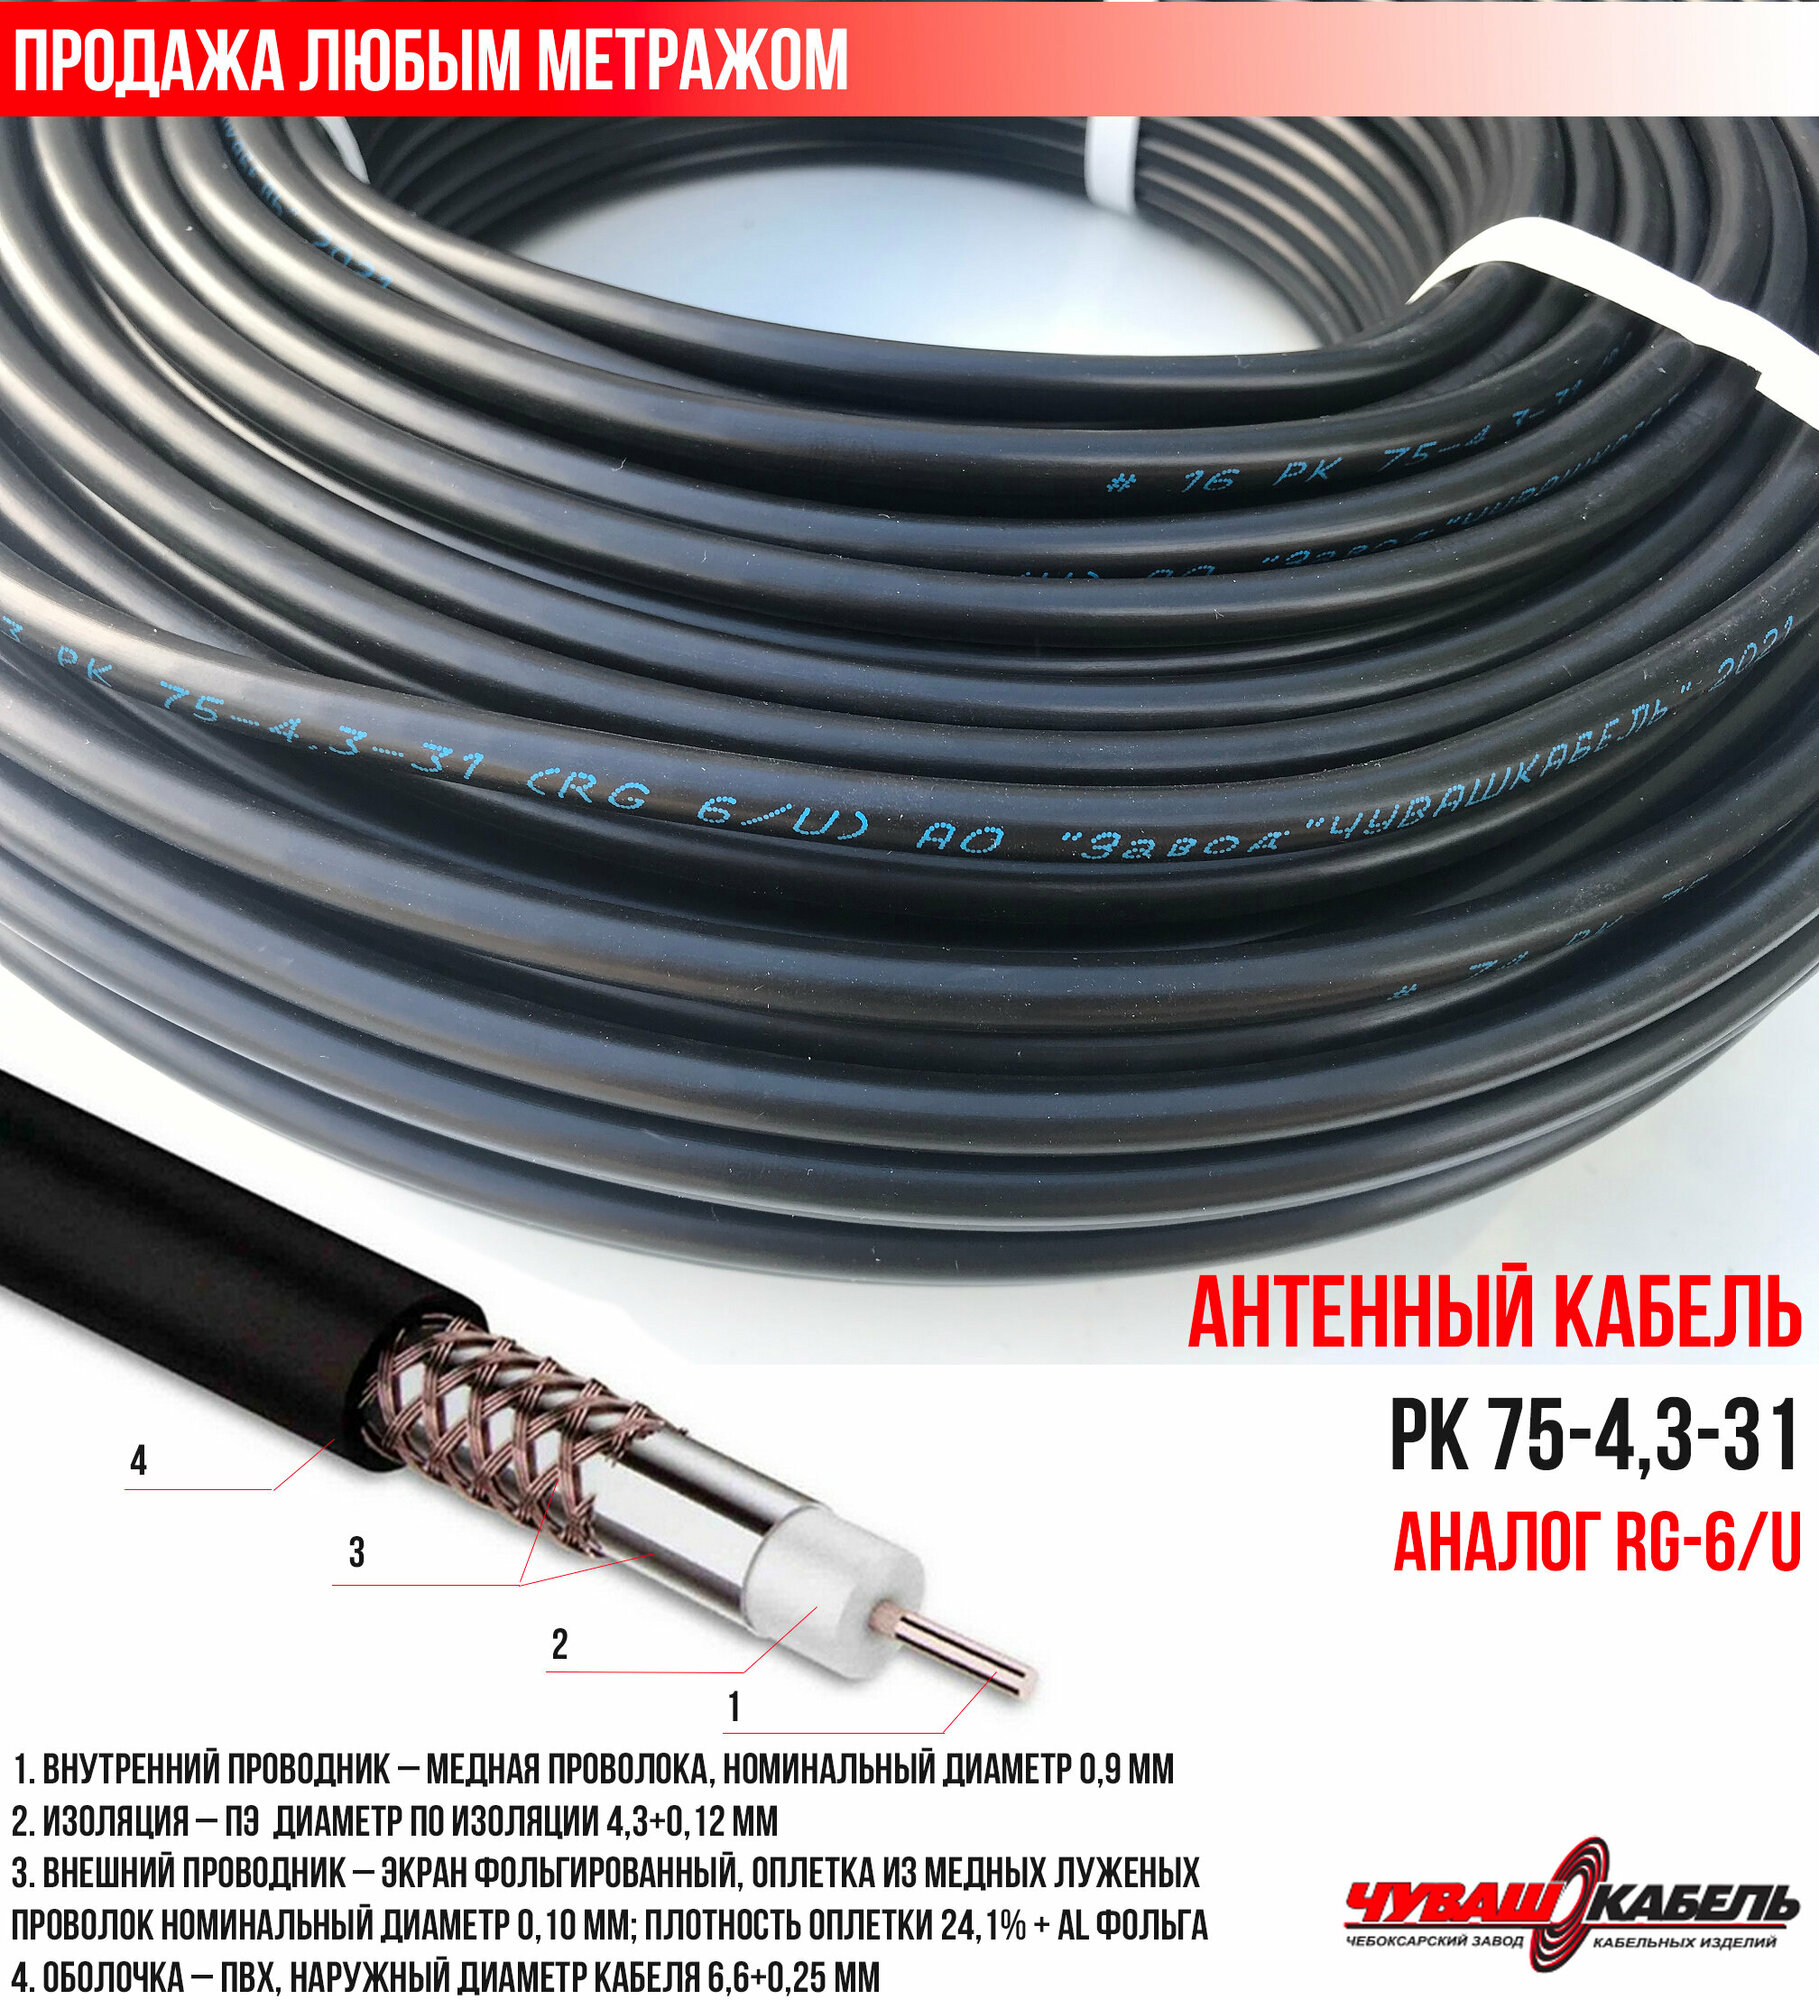 Телевизионный кабель (антенный 75Ом) РК 75-4,3-31 ЧувашКабель для уличной прокладки (продажа метражом) - фотография № 1